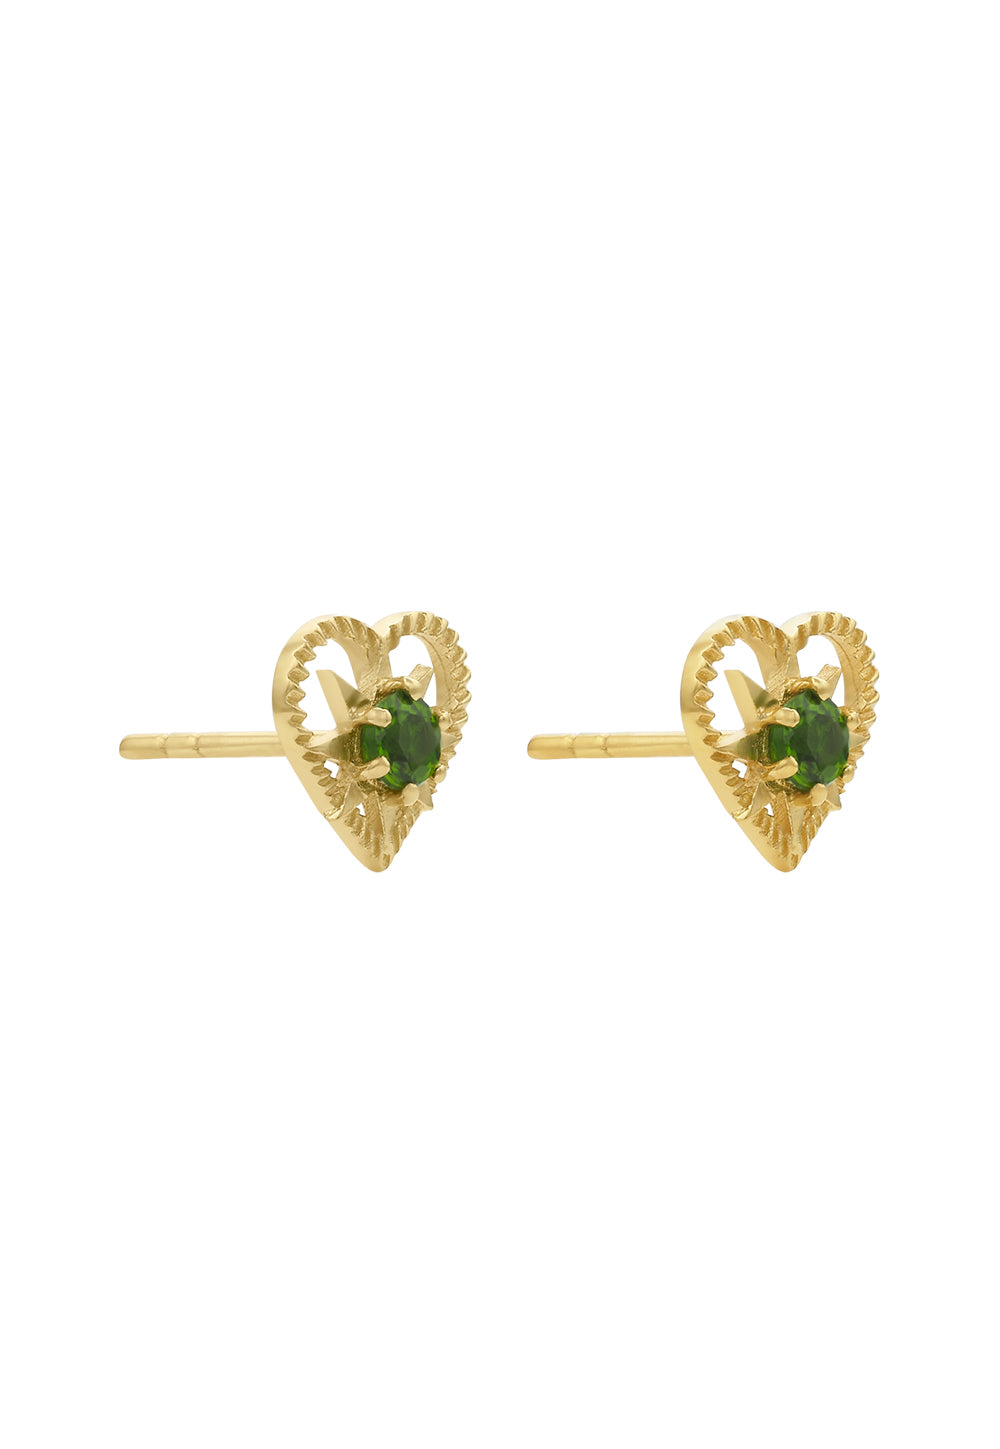 Kind Heart Earrings sold by Angel Divine